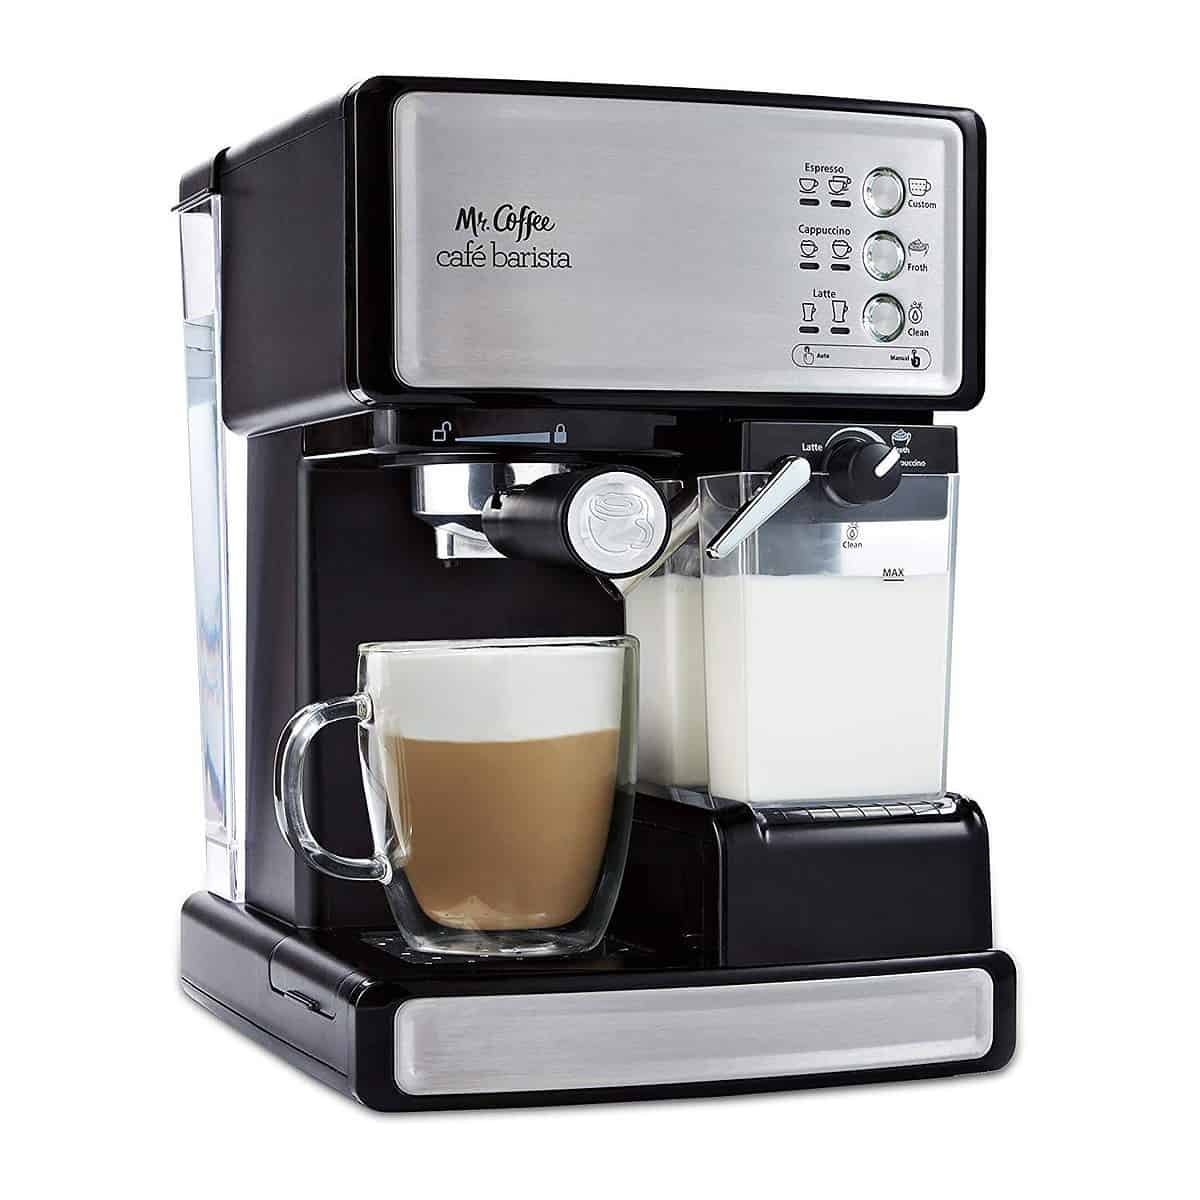 best espresso machine under 200 - mr coffee cafe barista